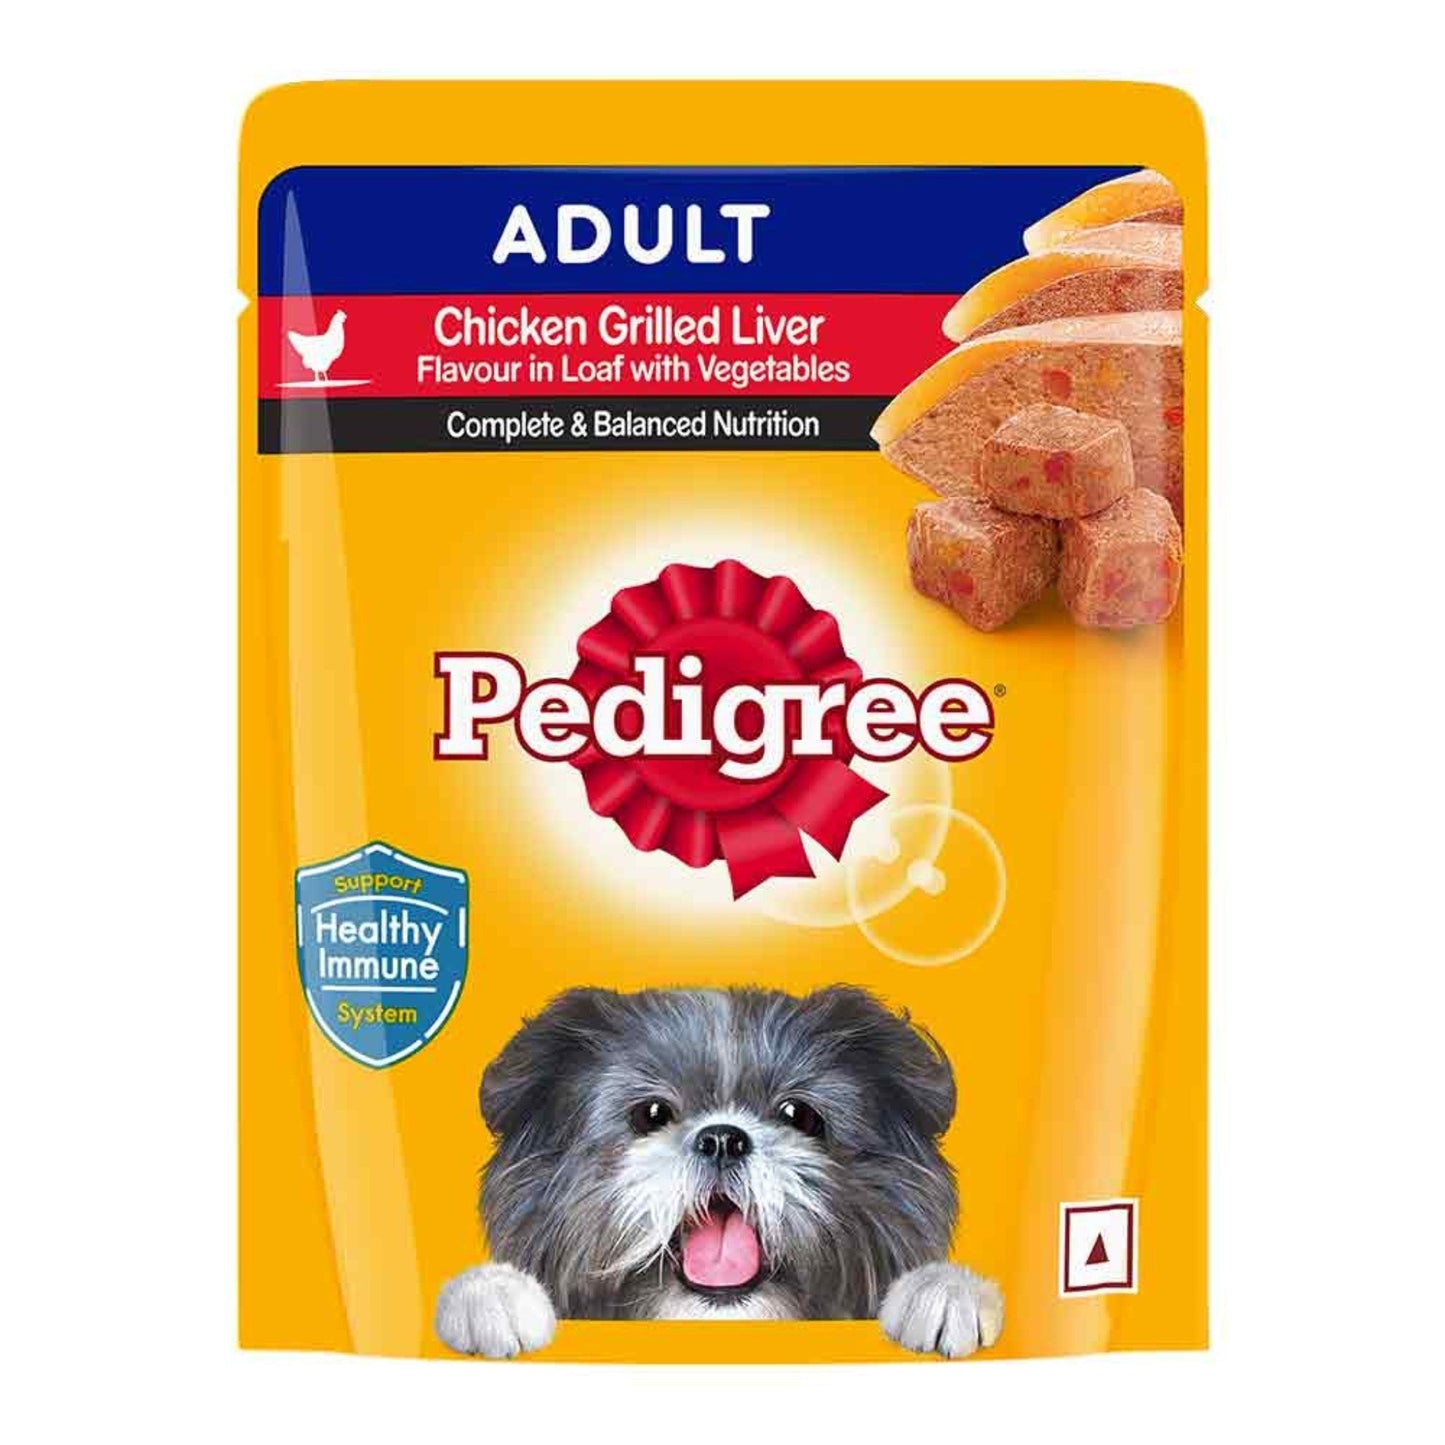 Pedigree Adult Dog Wet Food, Chicken Grilled Liver 70gm, Pack of 60